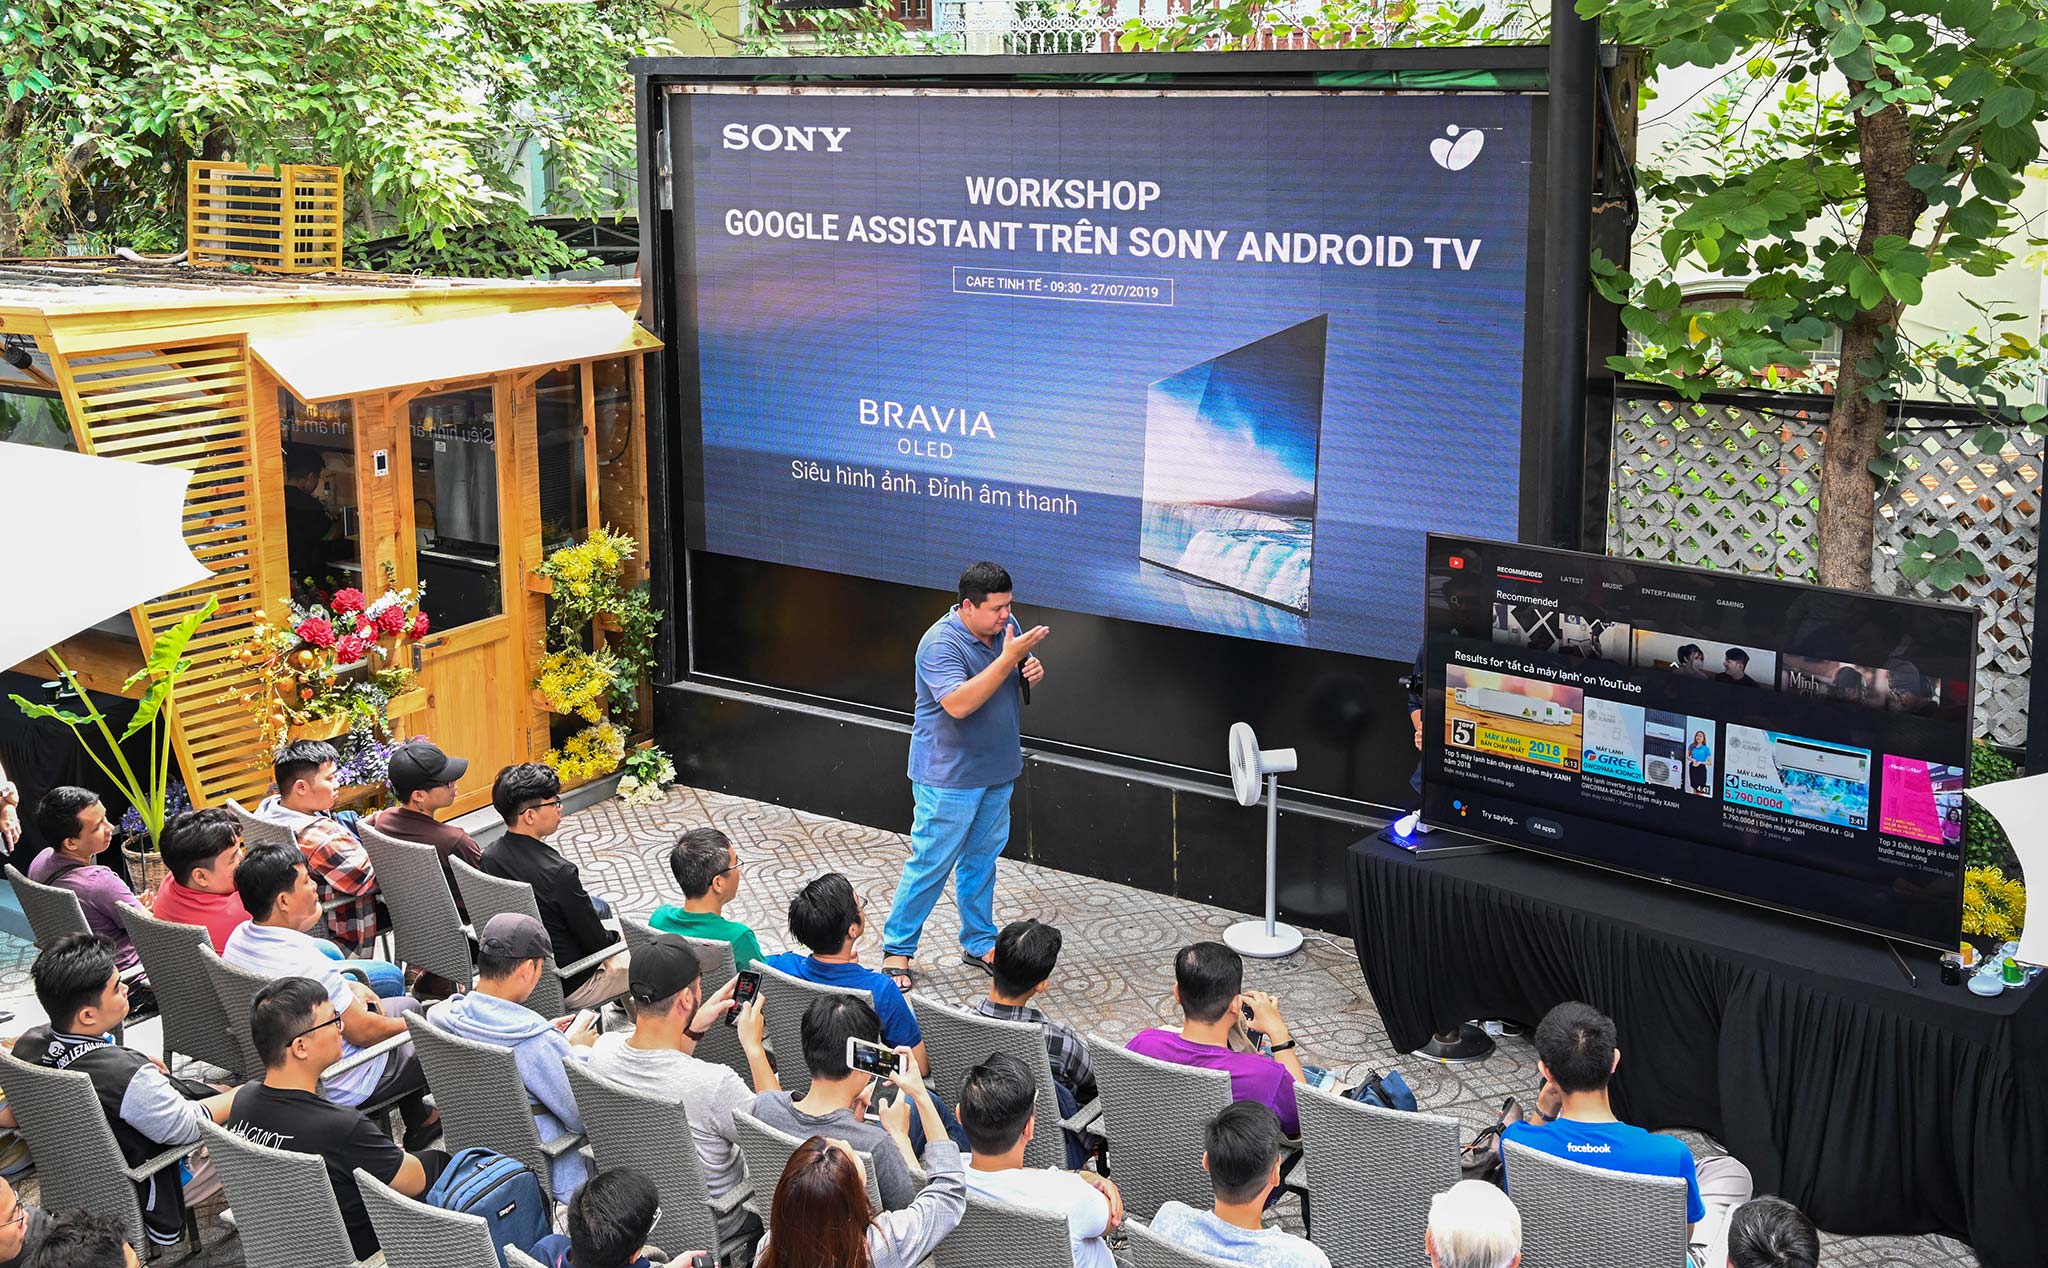 Hình ảnh buổi offline trải nghiệm Google Assistant với TV Sony: nhiều câu hỏi thú vị